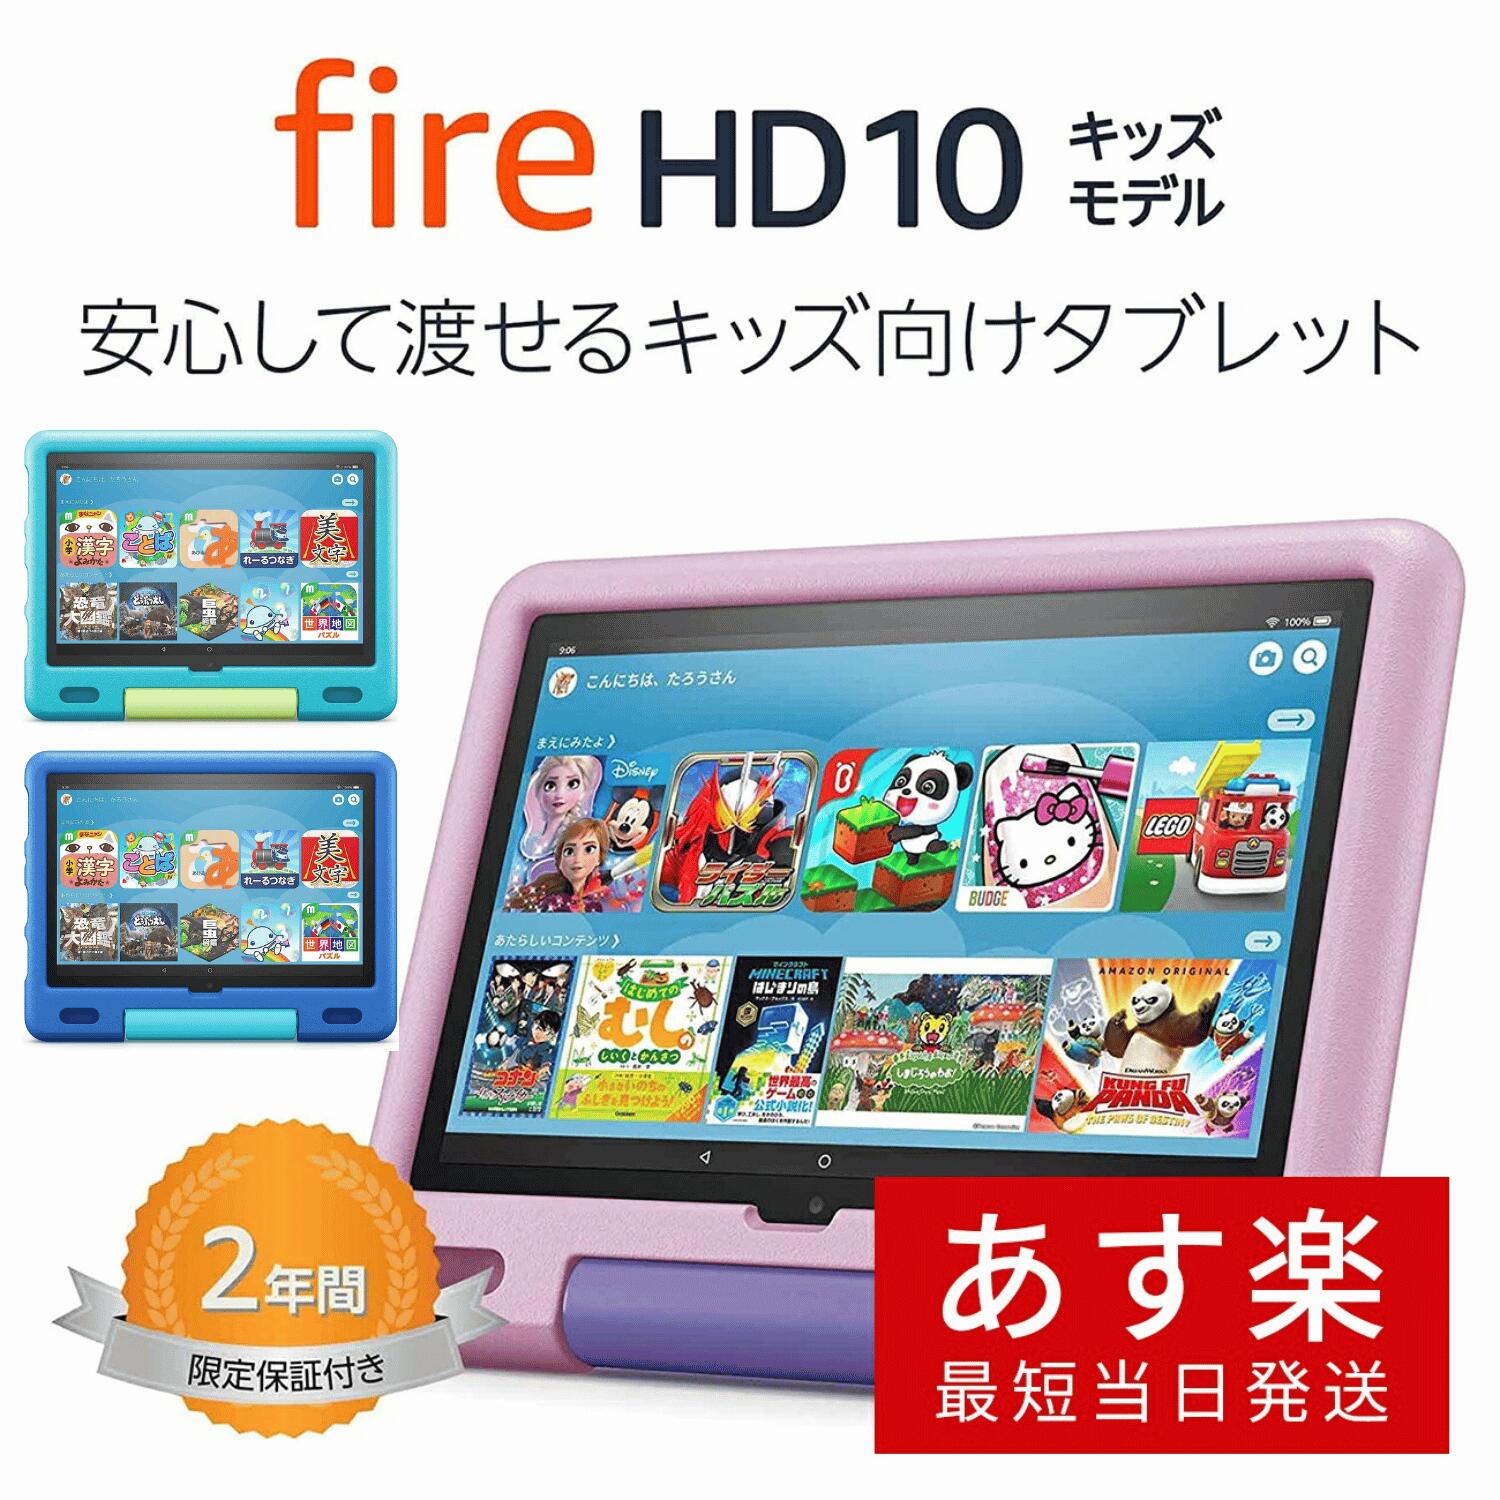 【楽天市場】【あす楽当日発送】Fire HD 10 キッズモデル (10インチ) 数千点のキッズコンテンツが1年間使い放題 ラベンダー